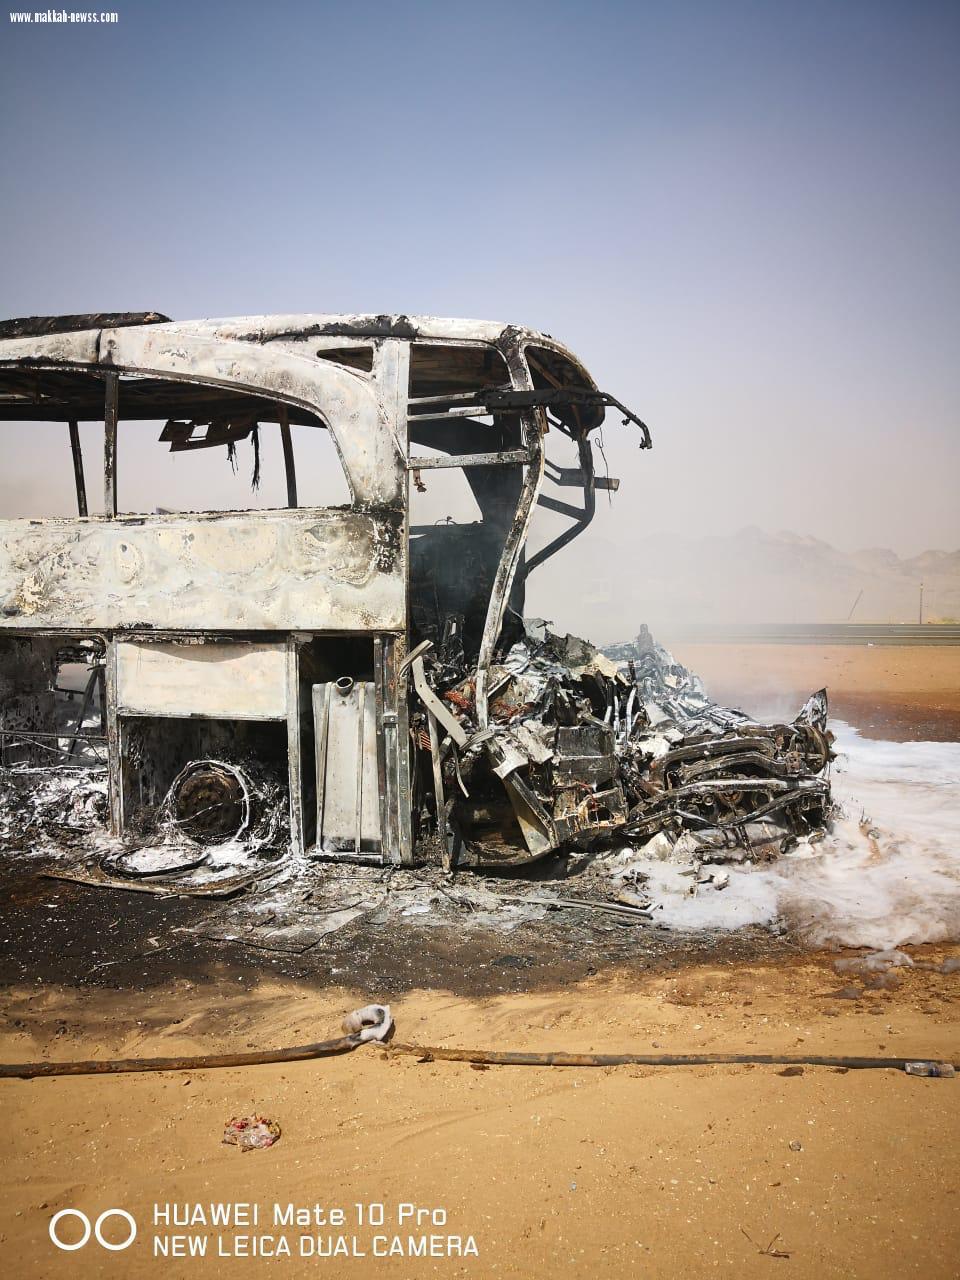 6 وفيات و6 إصابات في تصادم حافلة مروع قبل كبري خليص باتجاه مكة